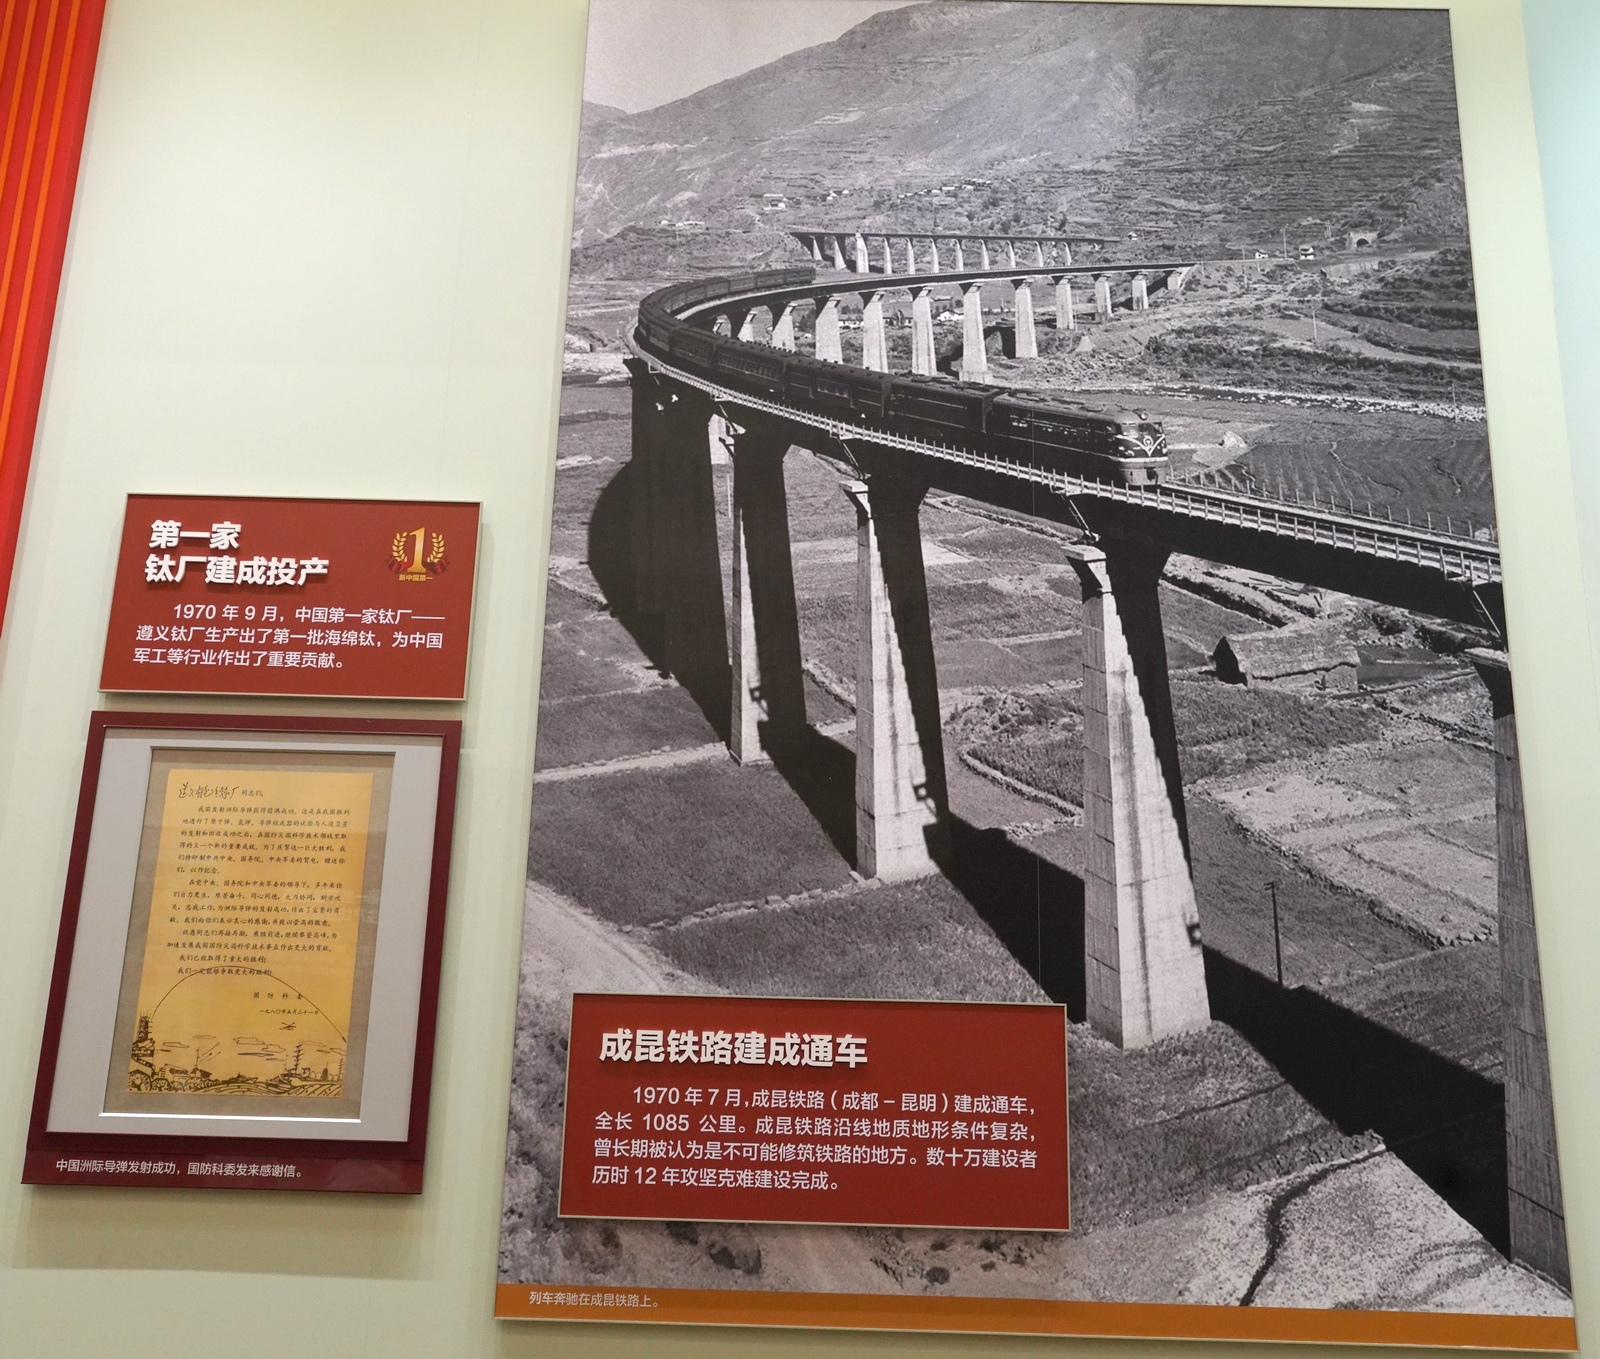 第一家鈦廠建成投產﹔成昆鐵路建成通車